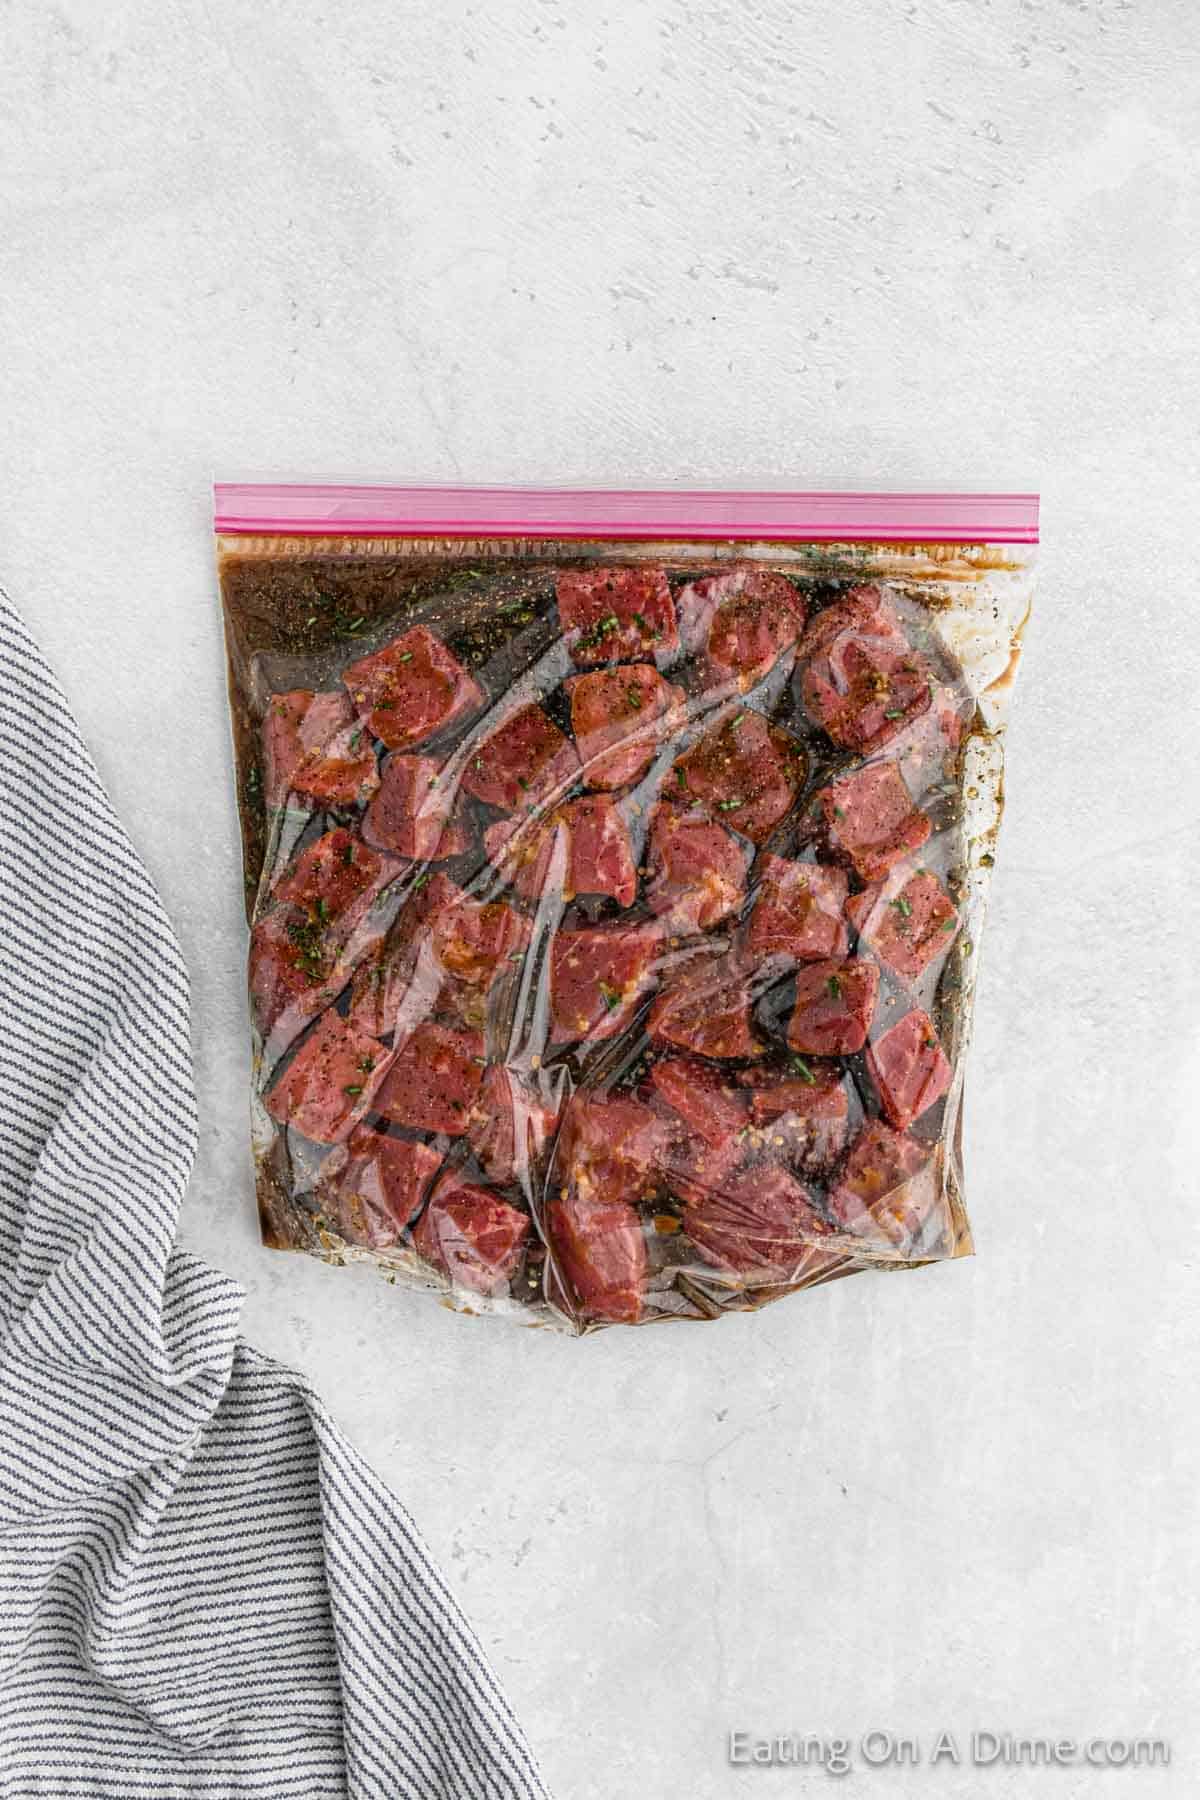 Marinate steak bites in a zip lock bag